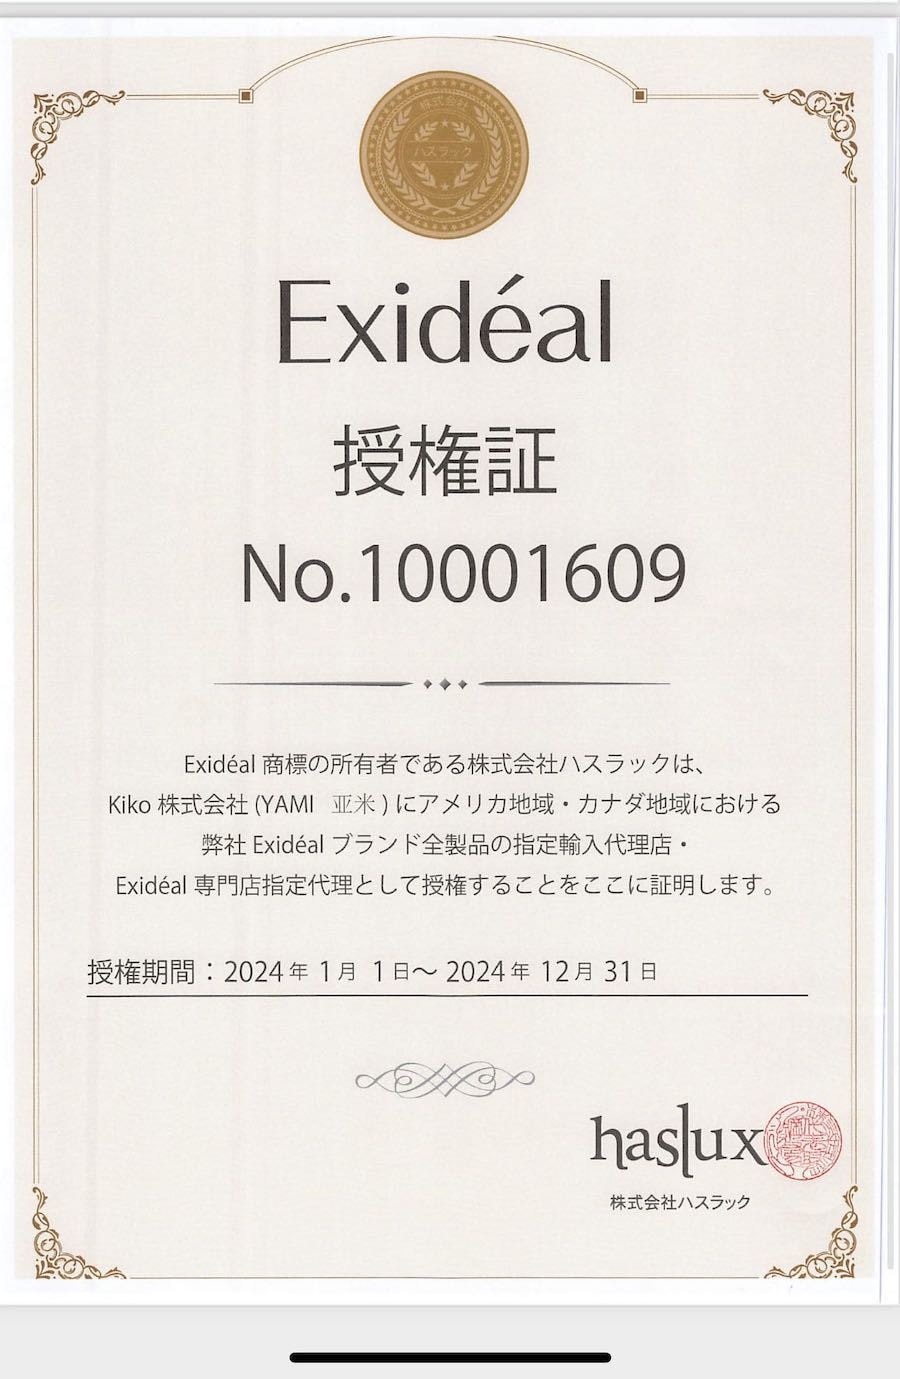 【日本直邮】北美唯一品牌代理Exideal沁光植萃肌活水喷雾化妆水 120ml